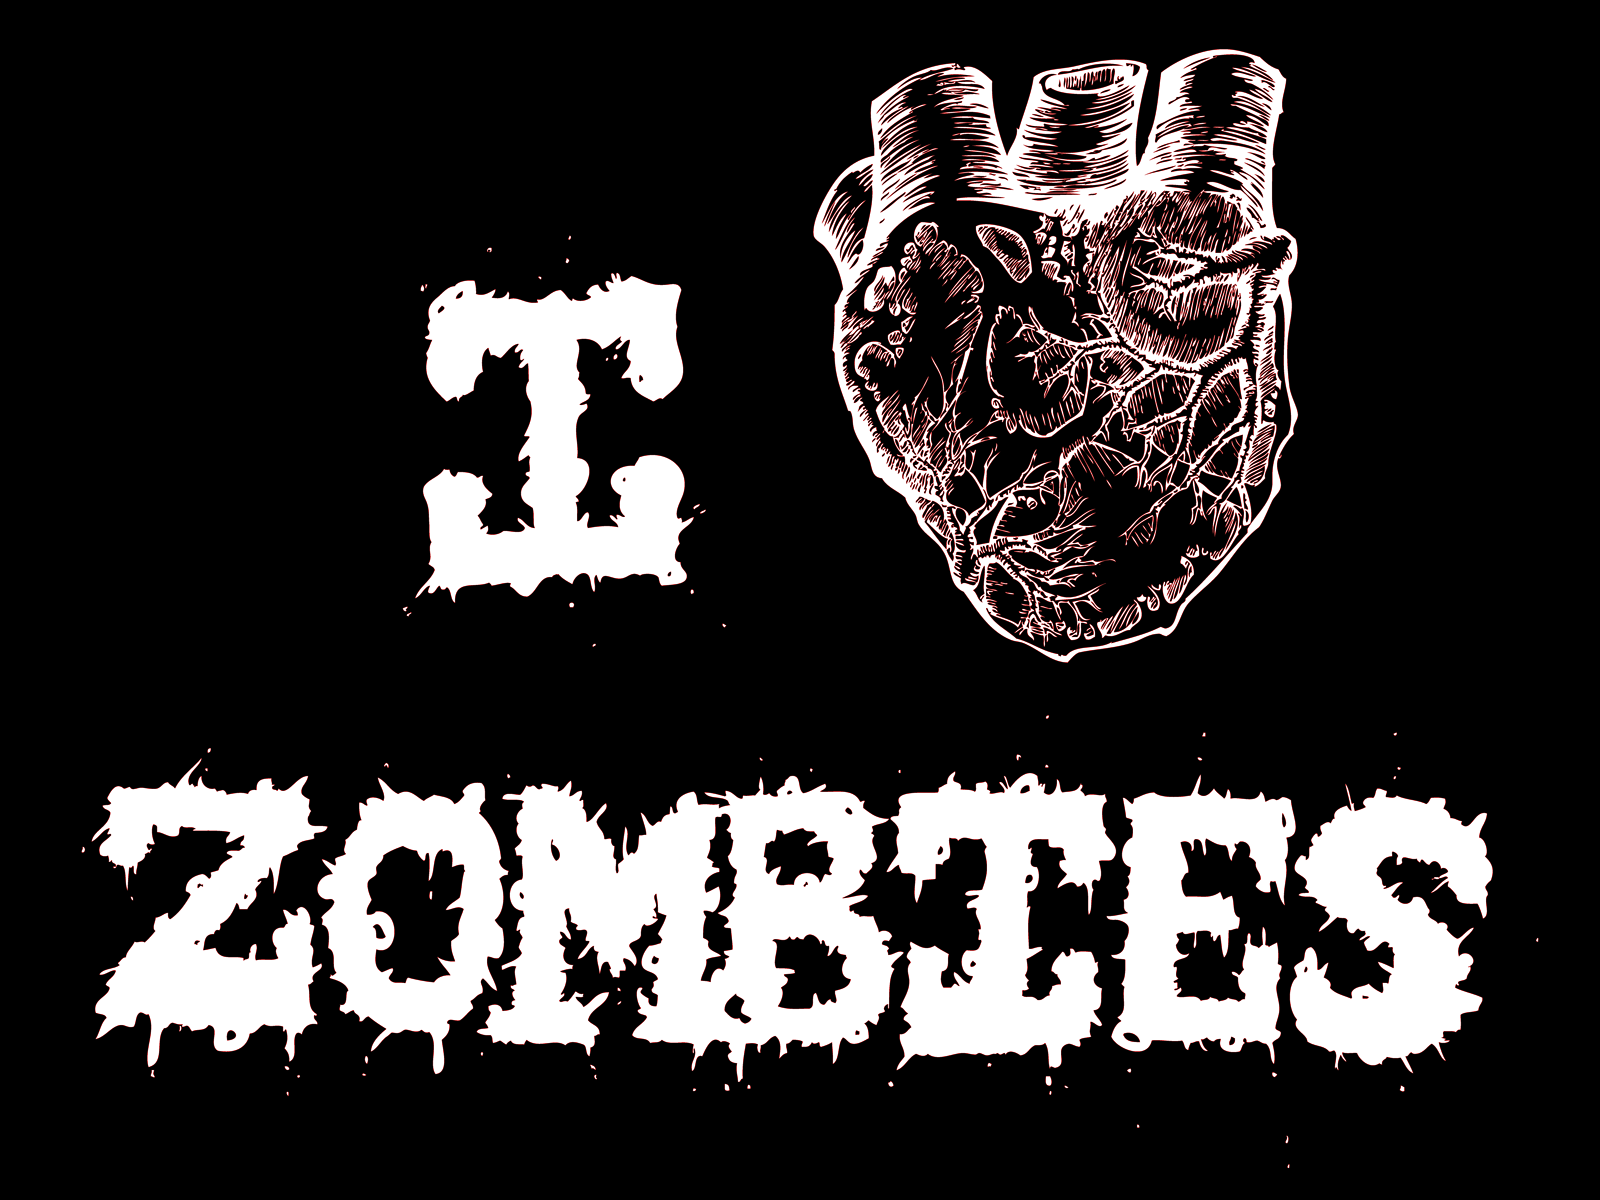 http://4.bp.blogspot.com/-j2eLE-k1NBc/Tilv0f3HhGI/AAAAAAAAGXQ/TvH5Hv3UXsg/s1600/horror-pictures-zombie-3.png